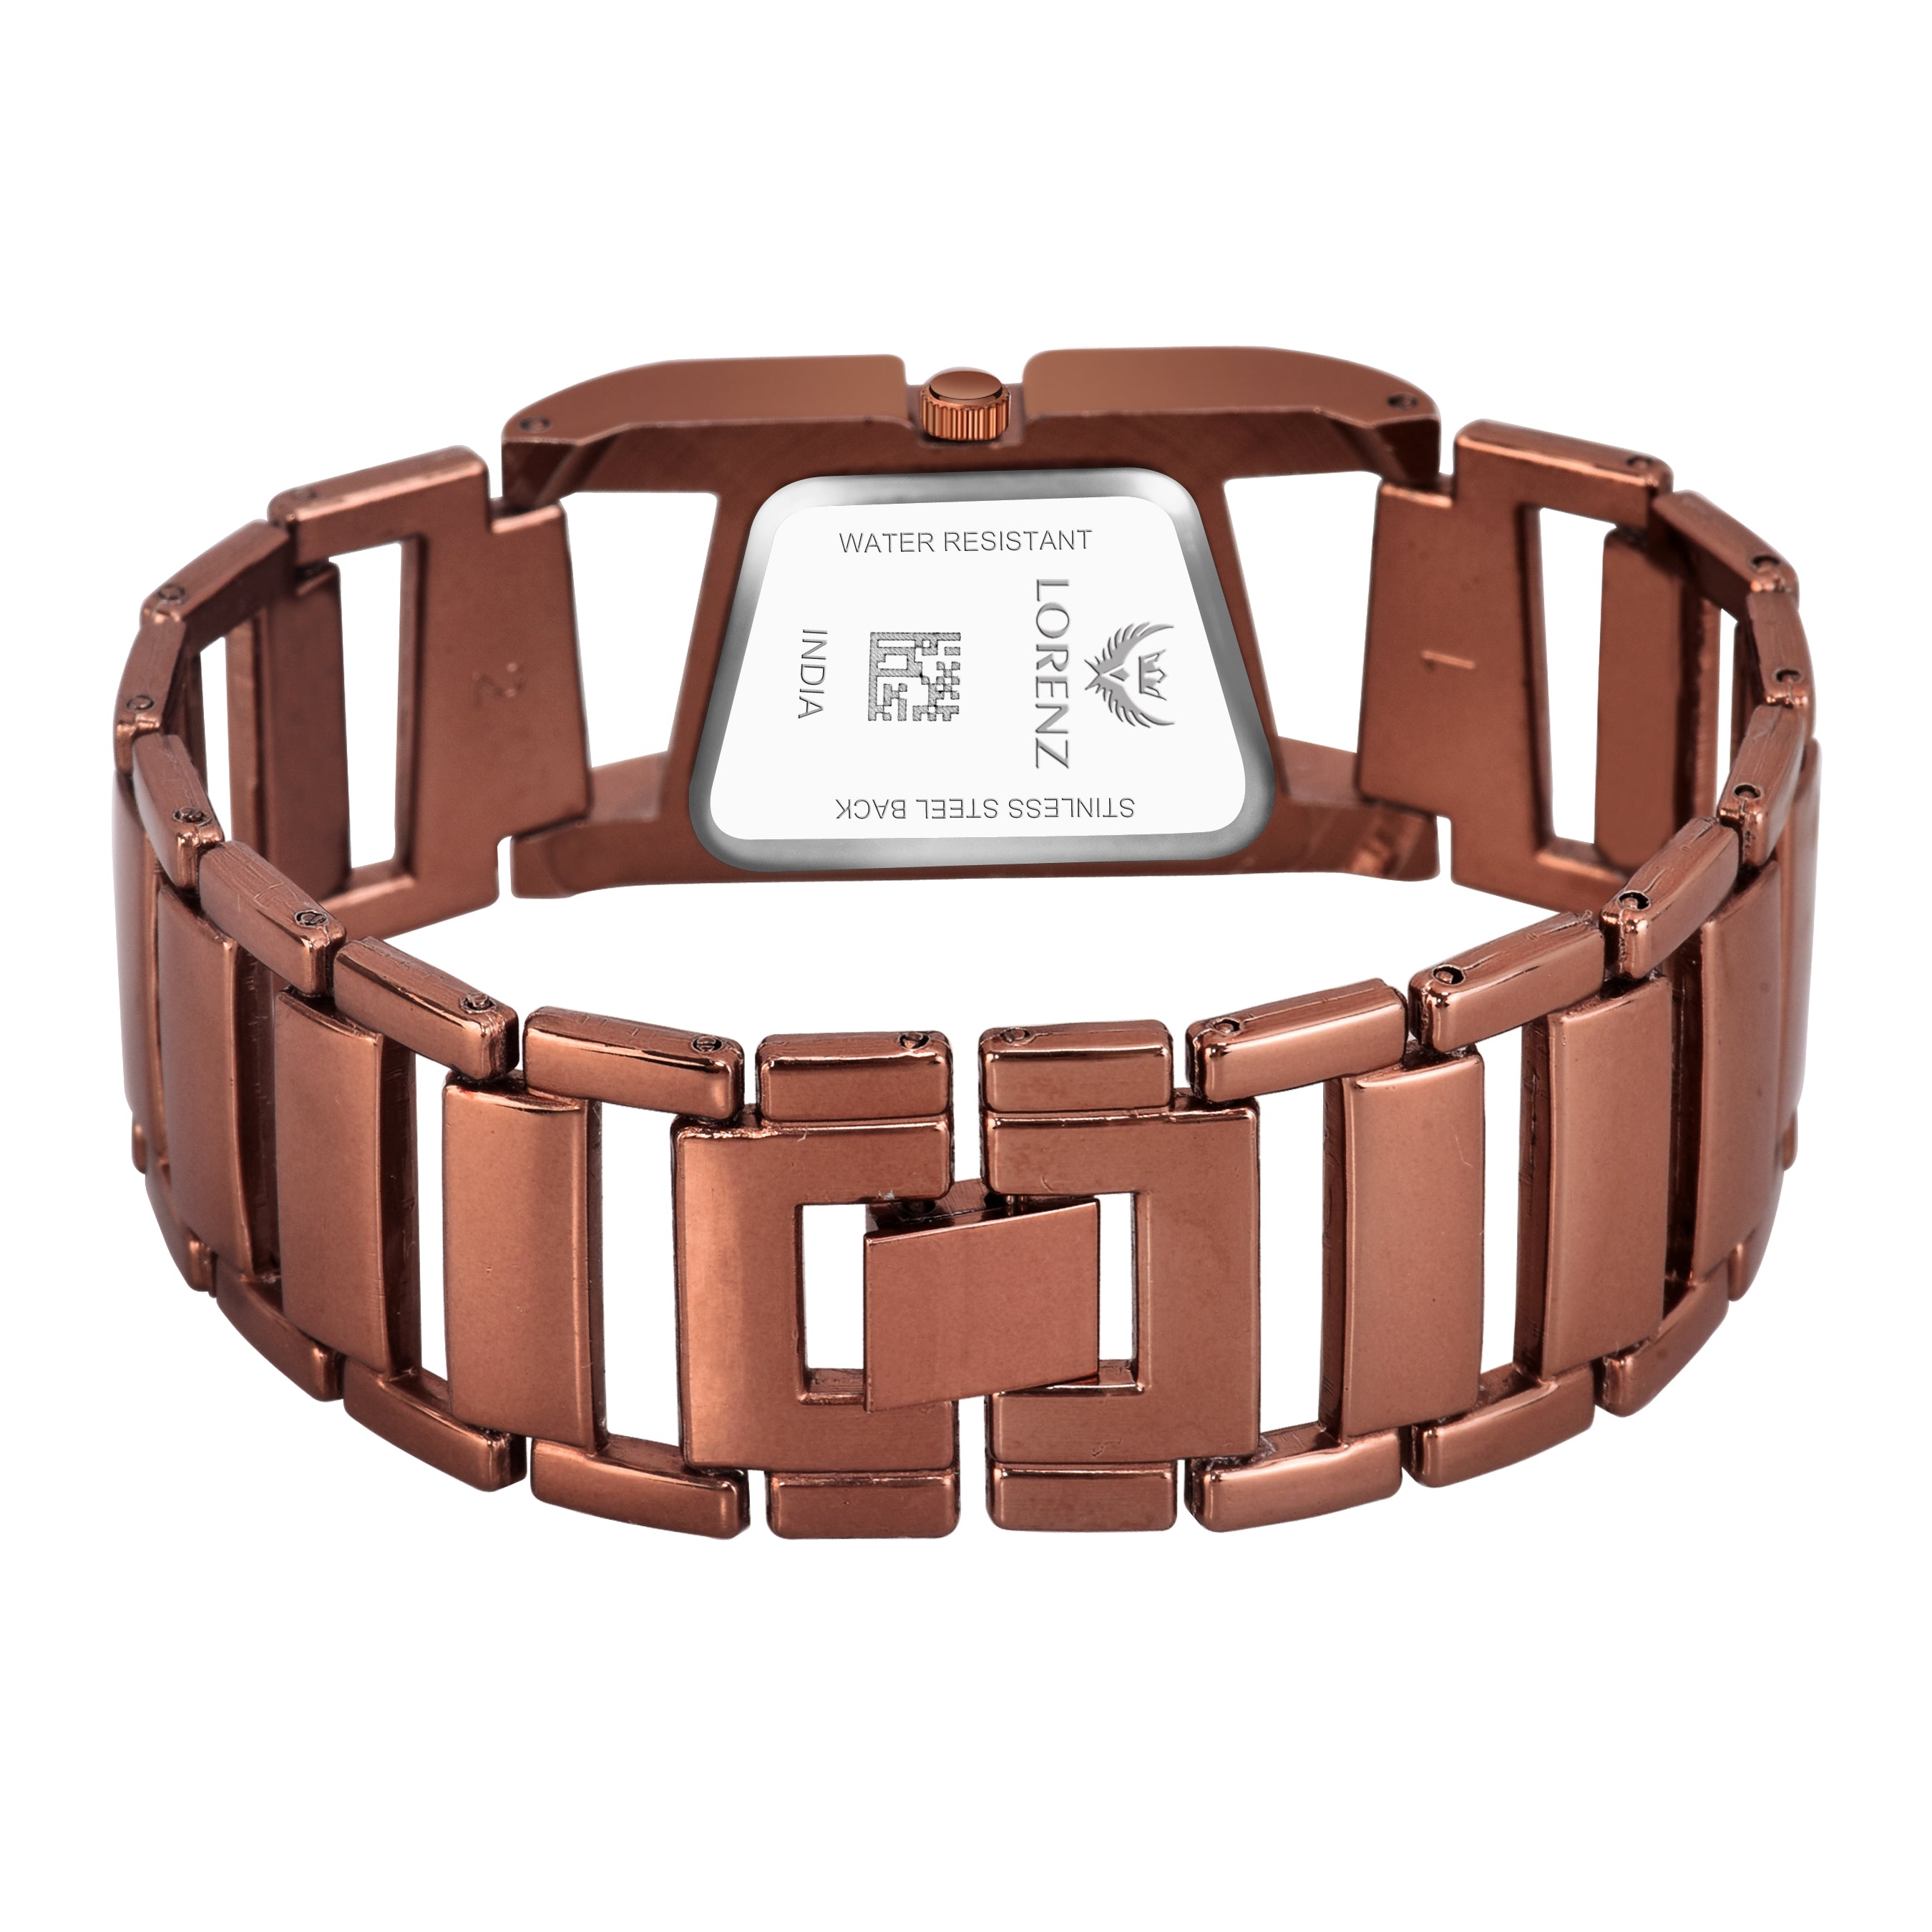 Chain bracelet watch